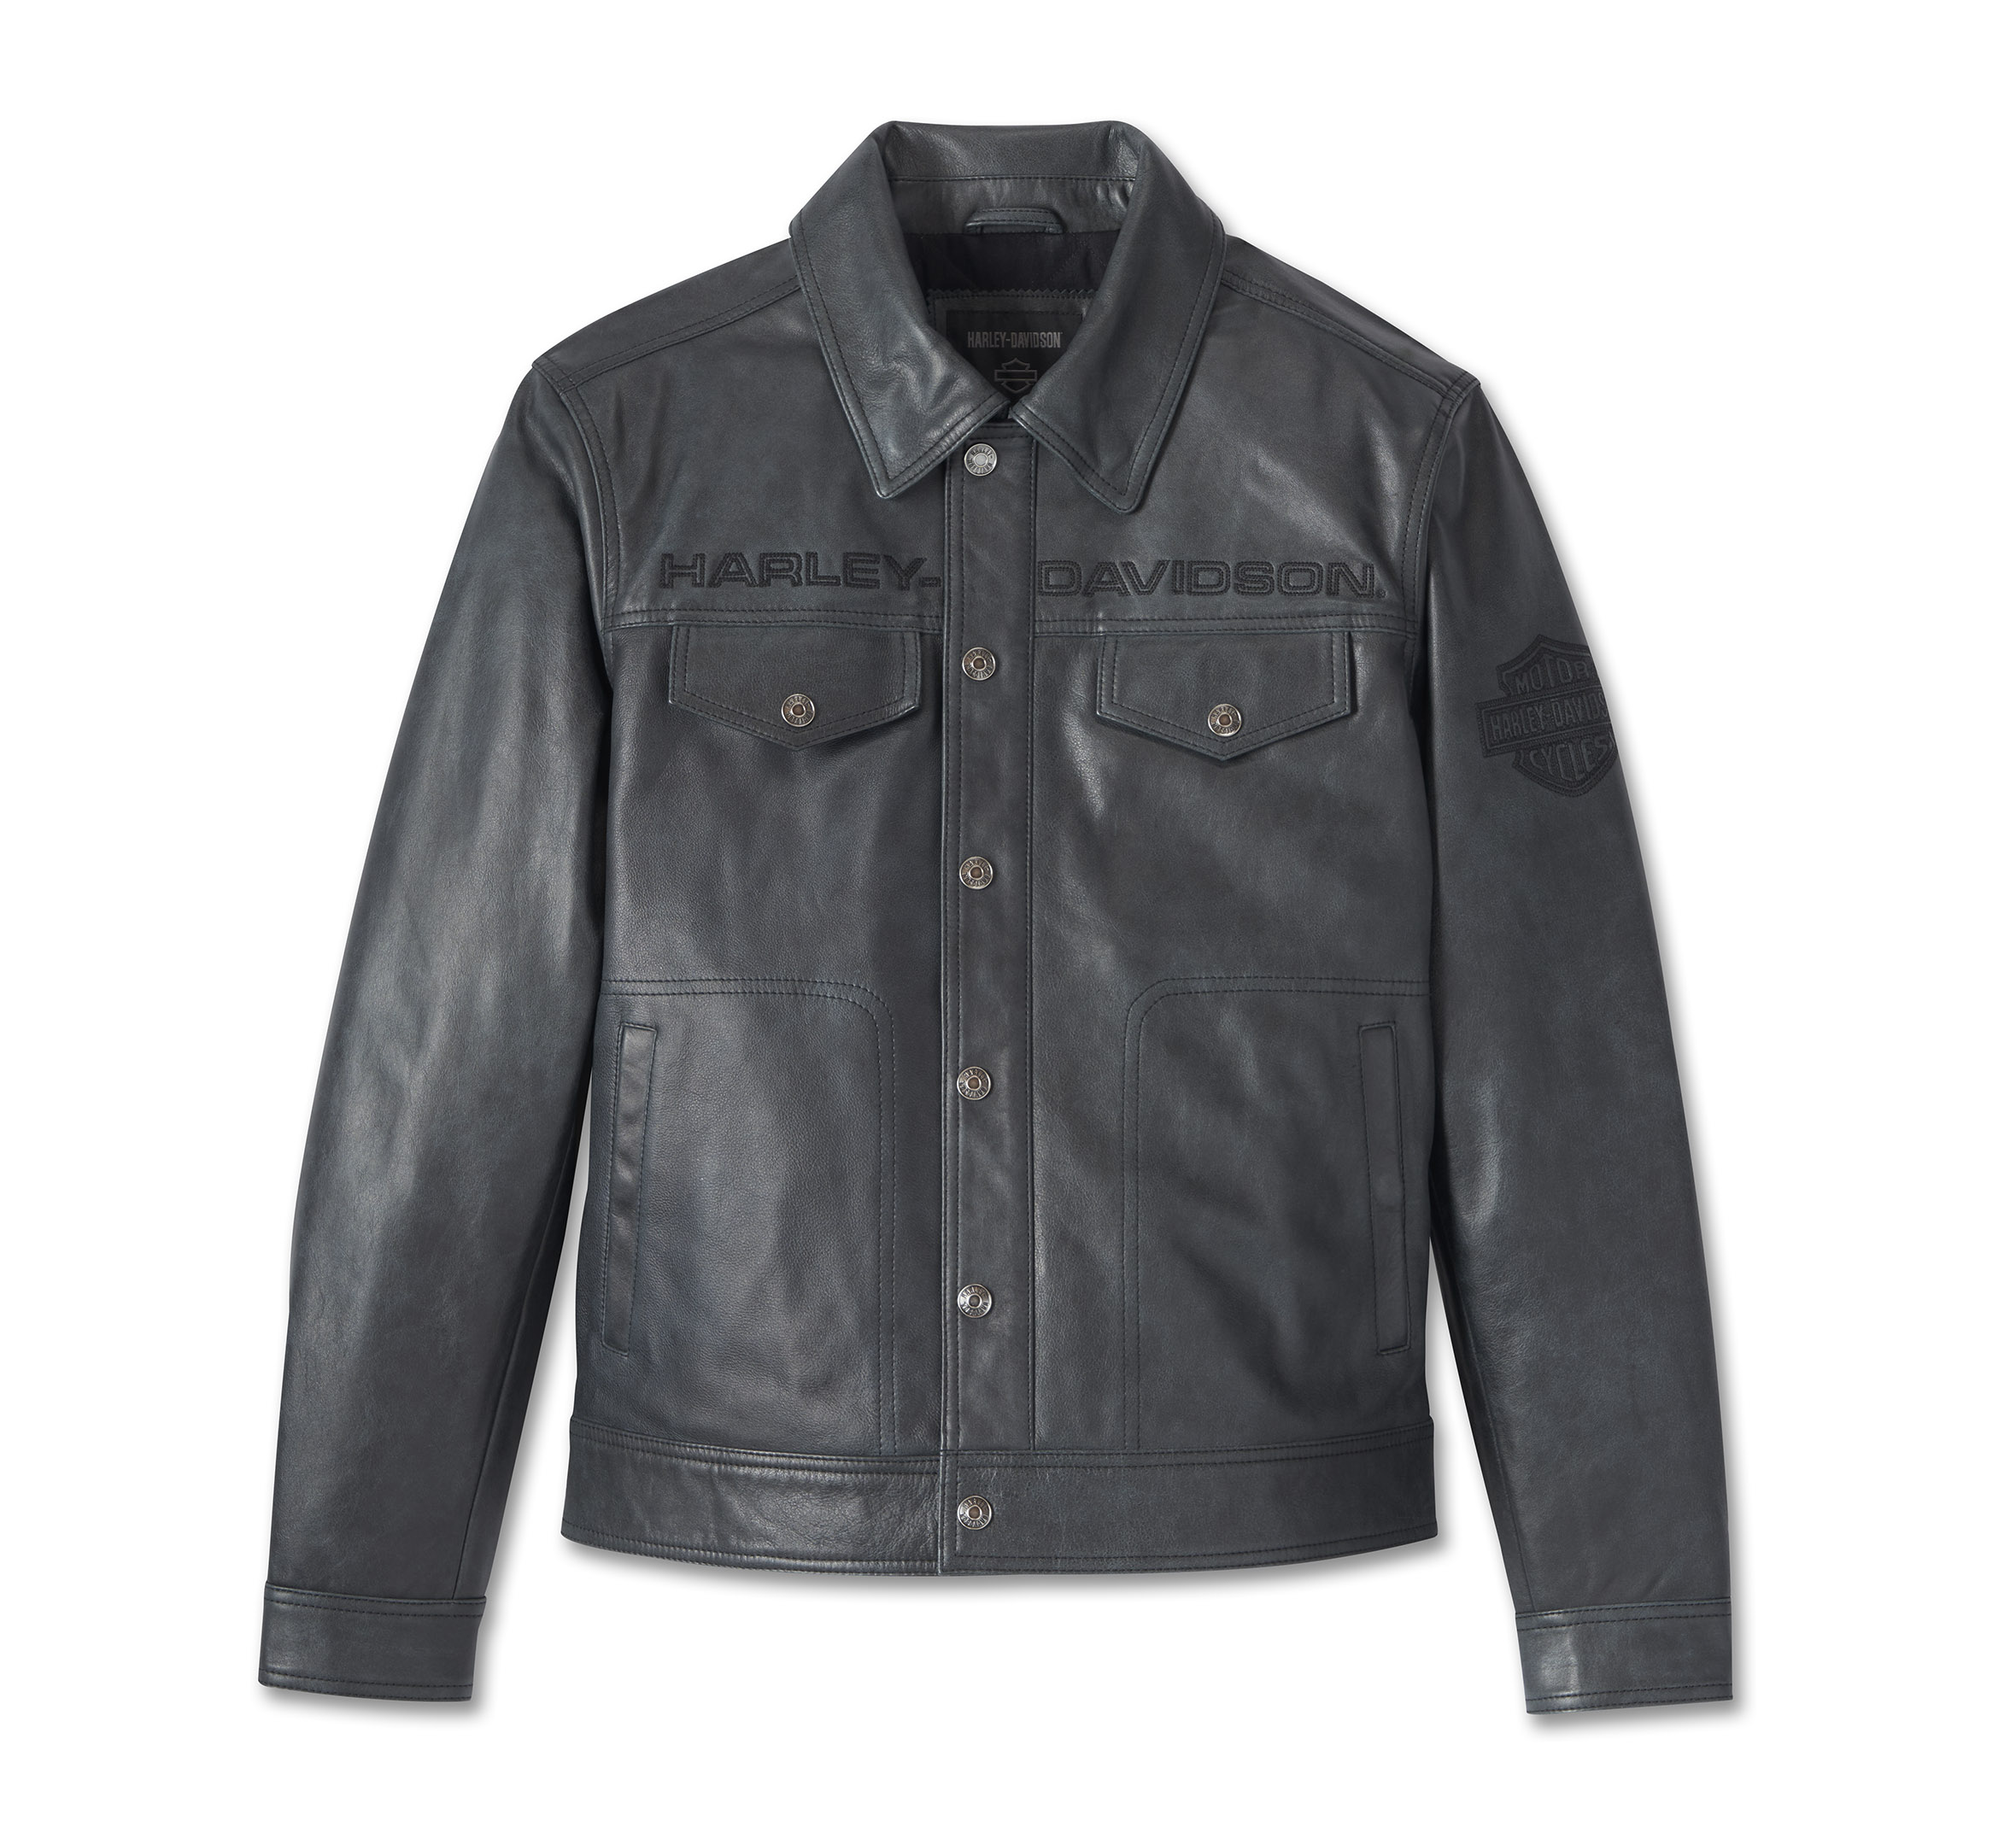 Men's Iron Mountain Leather Jacket